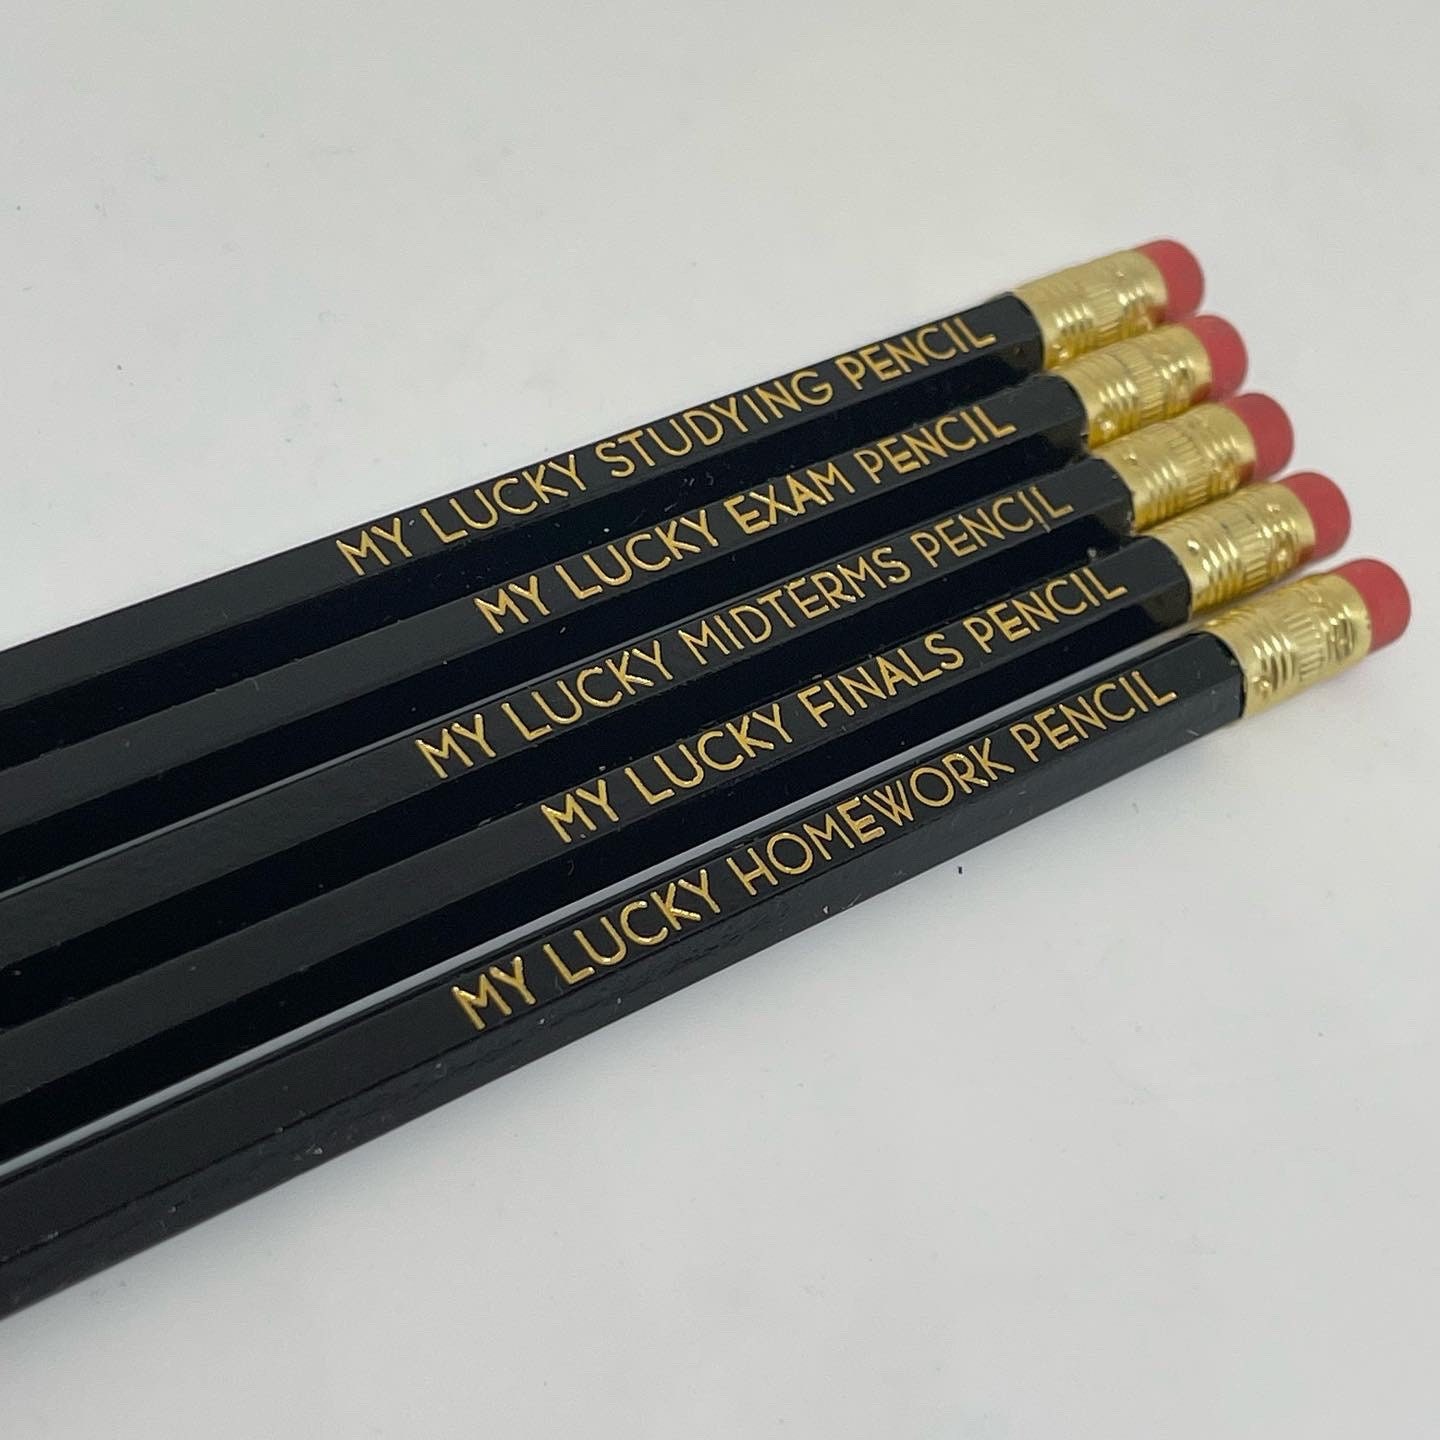 Lucky Exam Pencils 